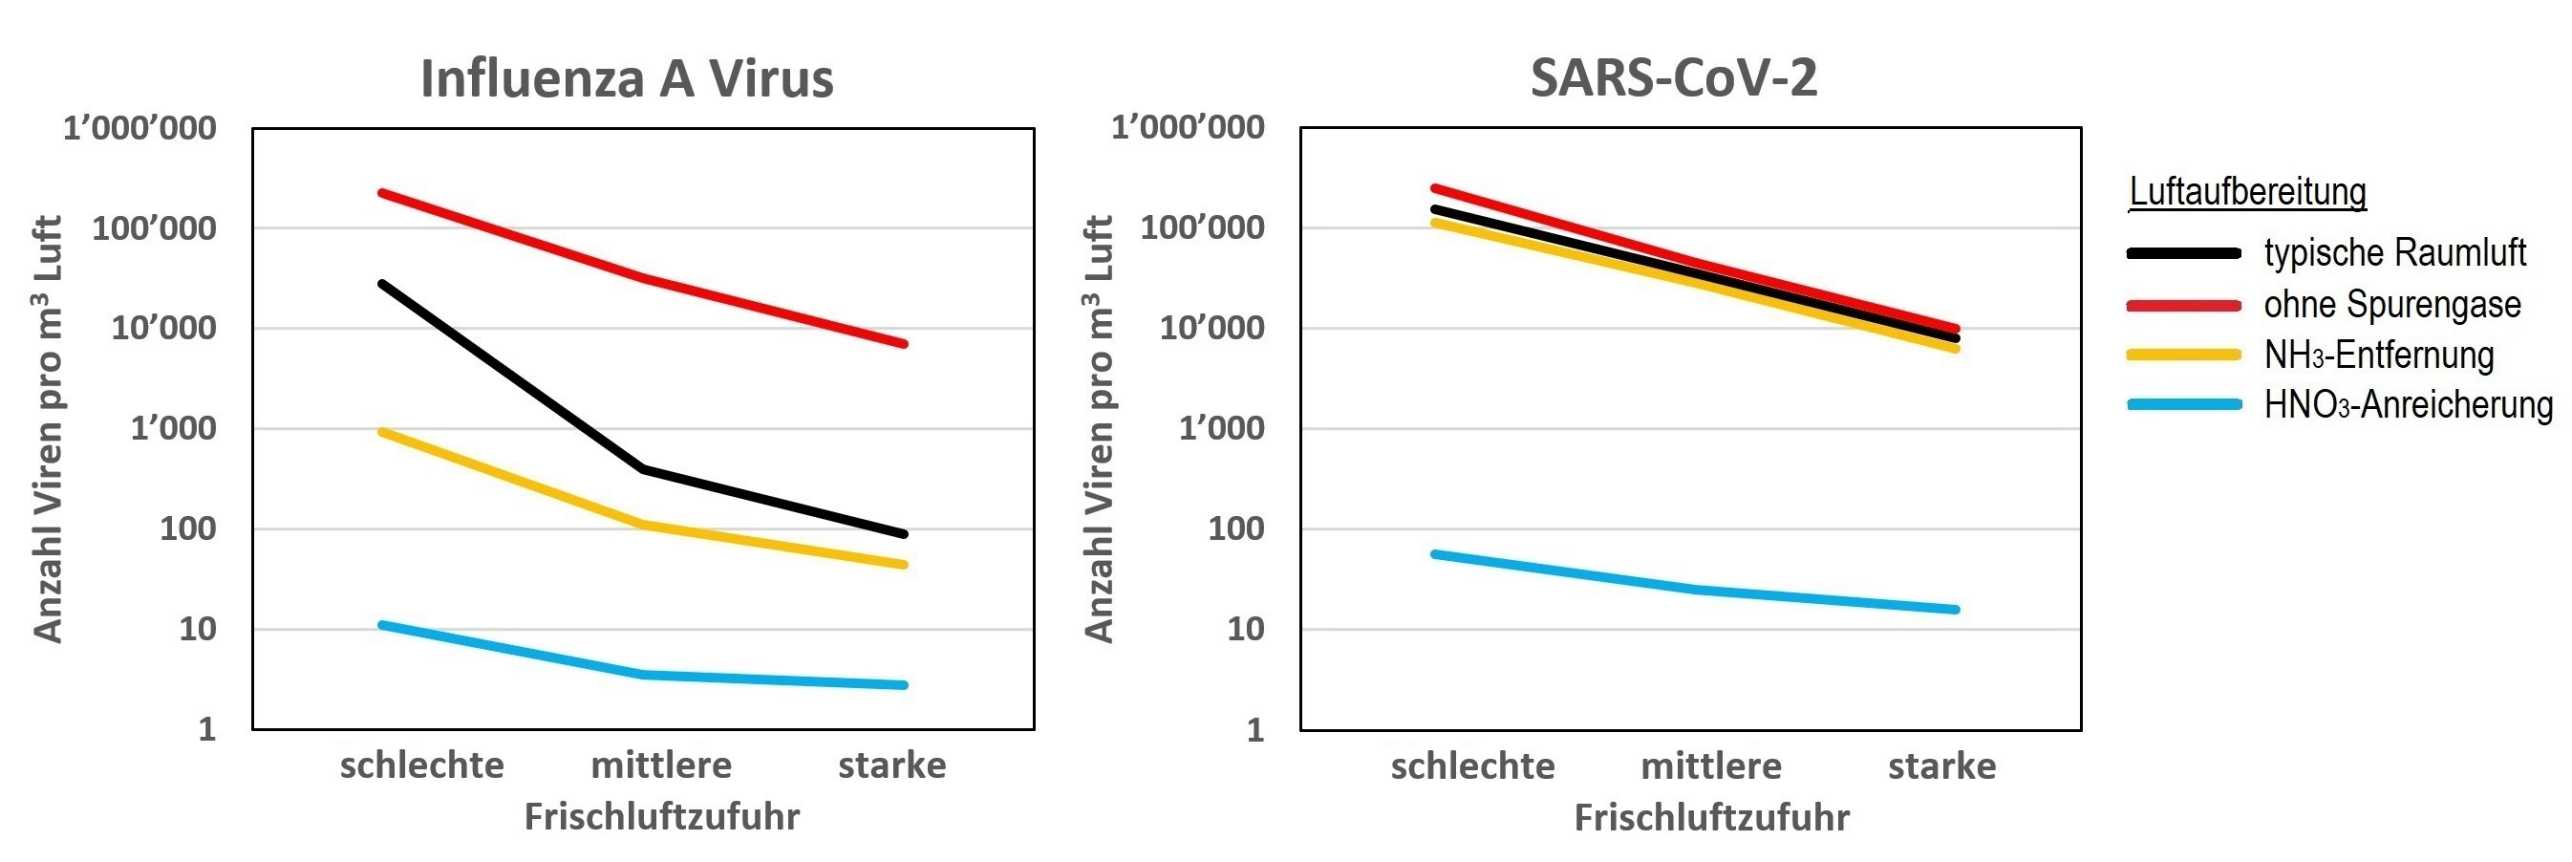 Infografik Anzahl Viren pro Kubikmeter Luft bei schlechter, mittlerer und starker Frischluftzufuhr für Influenza A Virus und SARS-CoV-2 im Vergleich. 